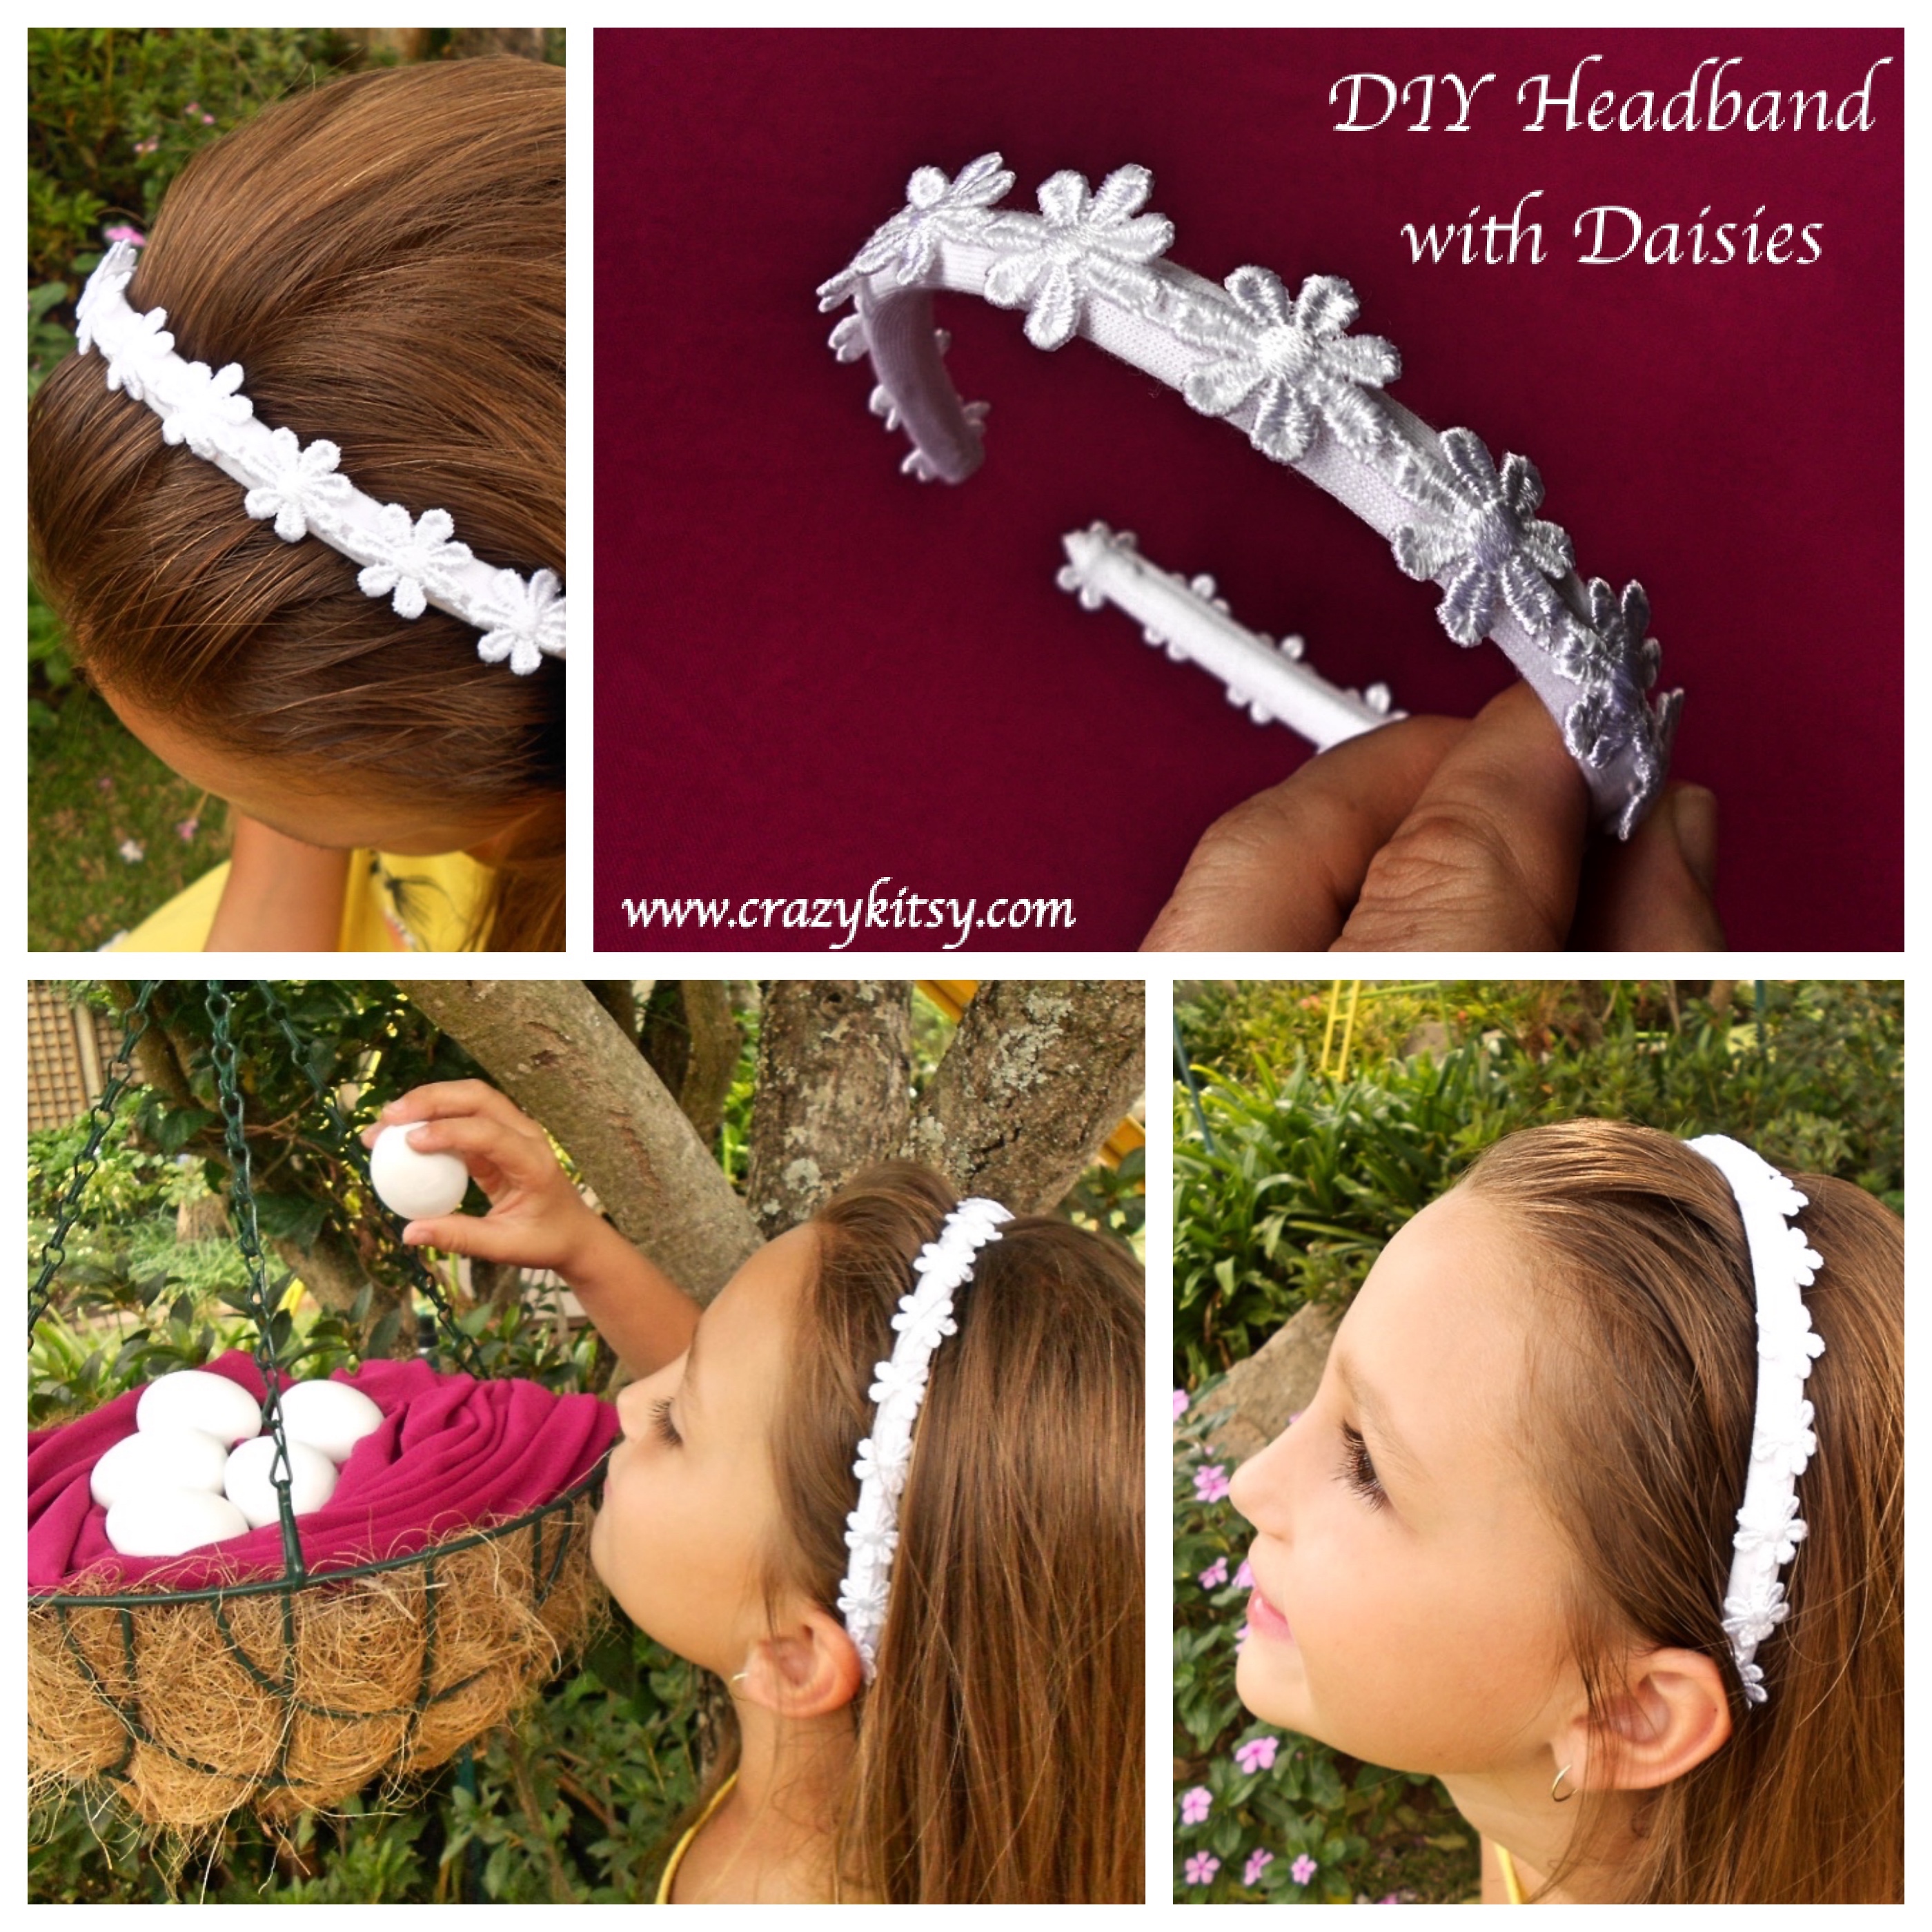 Daisy Headband Tutorial by Crazy Kitsy 